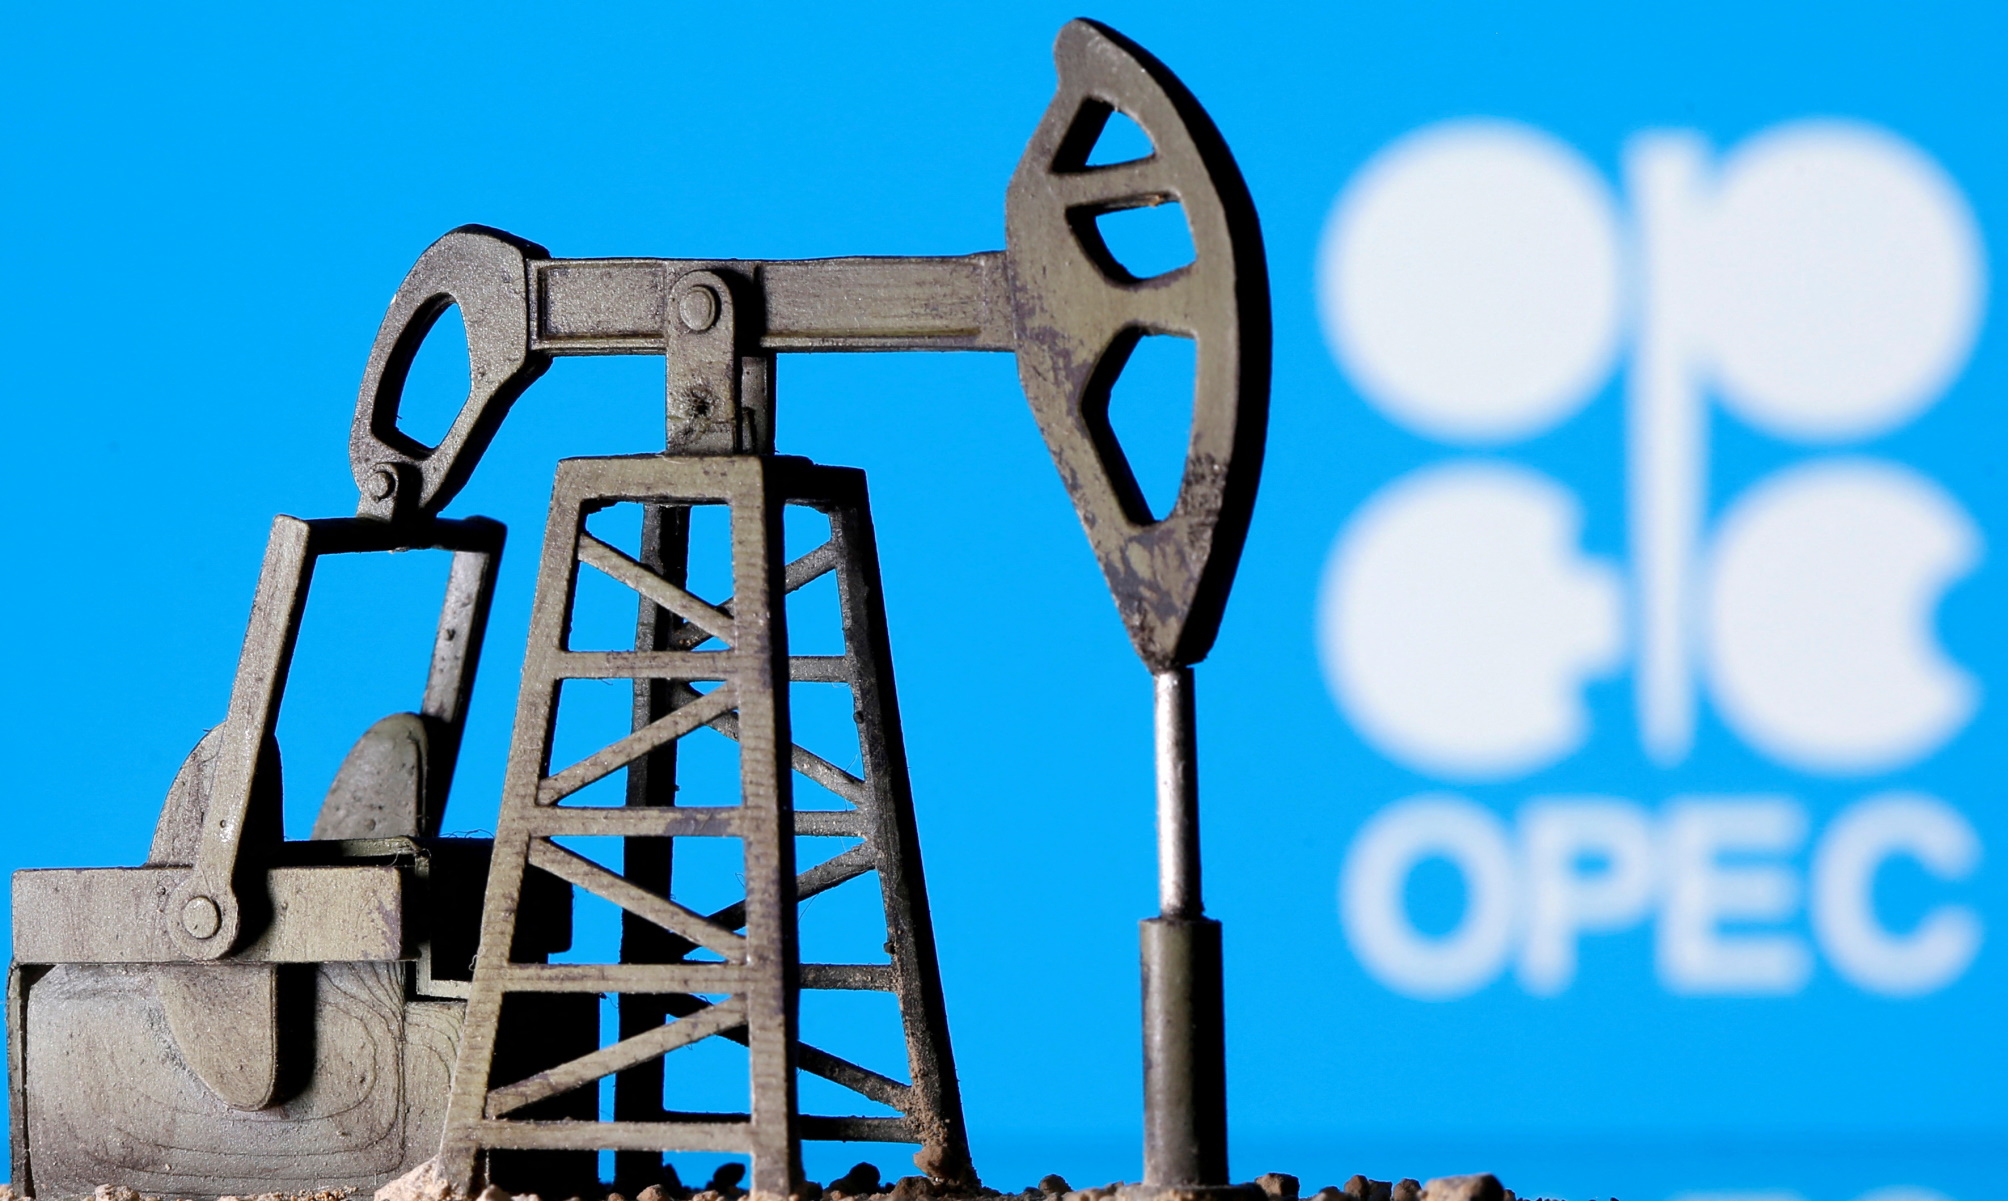 ΟΠΕΚ: Διατηρεί τη μείωση της παραγωγής πετρελαίου  – Ευχαριστημένη η Ρωσία, οργισμένες οι ΗΠΑ